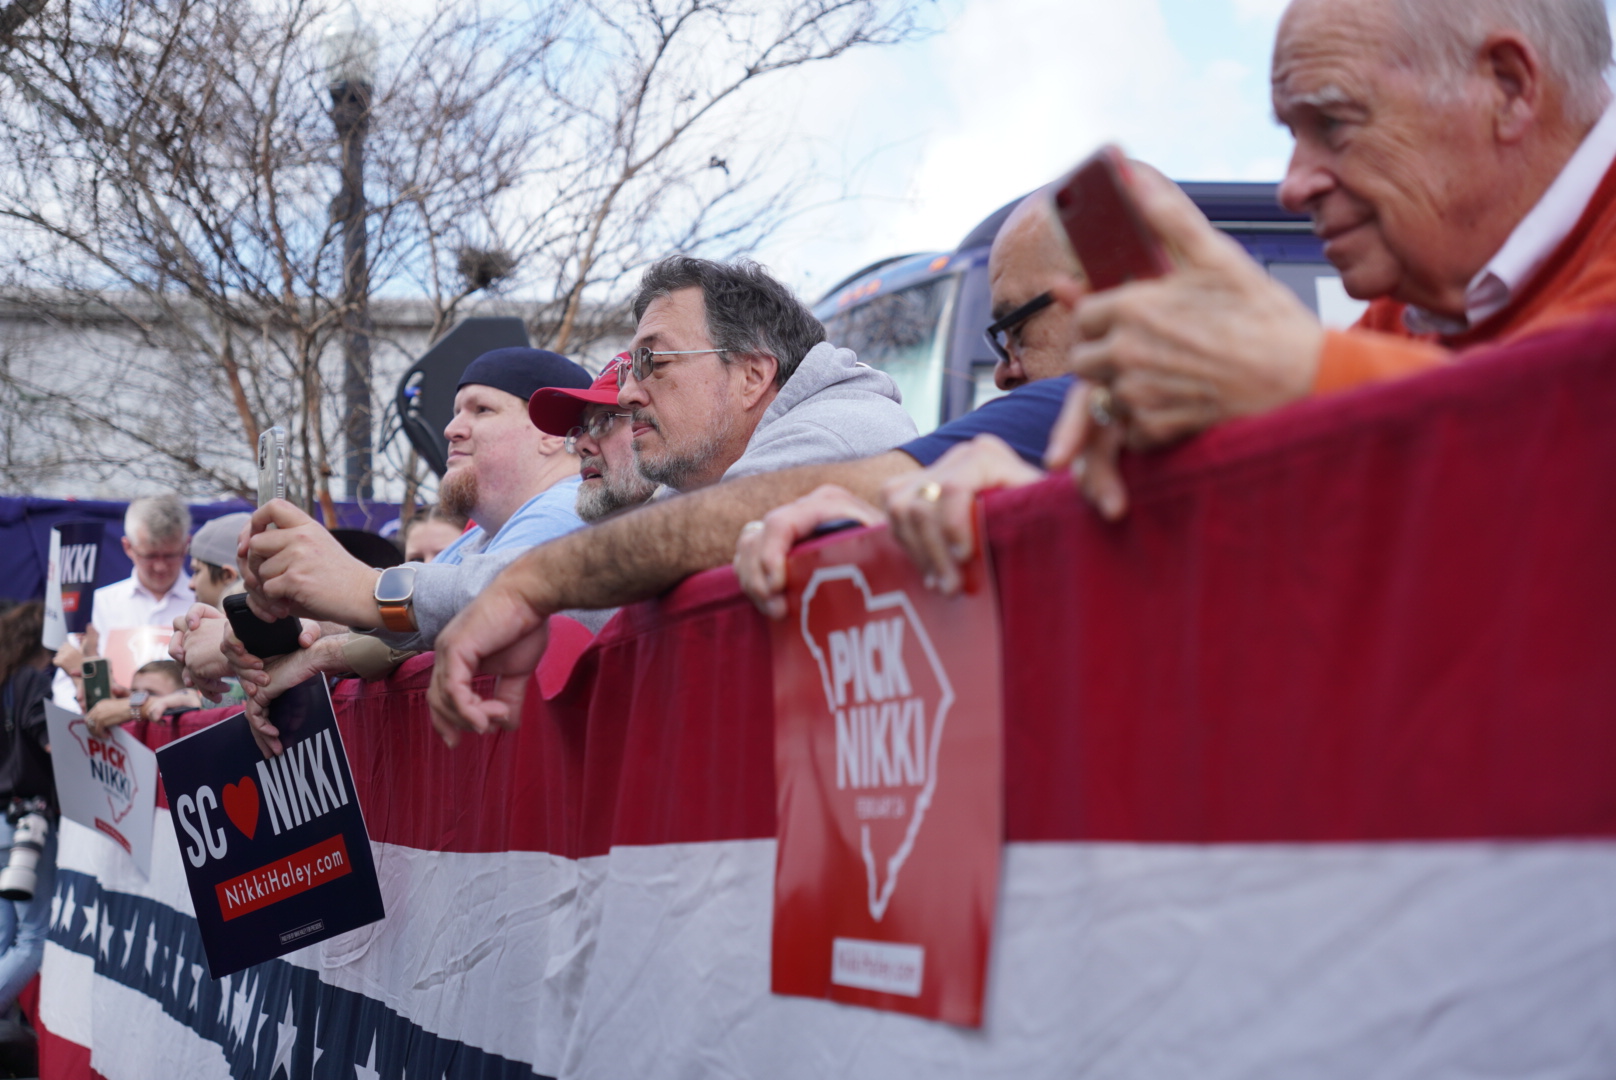 Những người ủng hộ bà Nikki Haley đang chờ đợi sự xuất hiện của bà tại một cuộc vận động tranh cử ở Moncks Corner, South Carolina, hôm 23/02/2024. (Ảnh: Ivan Pentchoukov/Epoch Times)